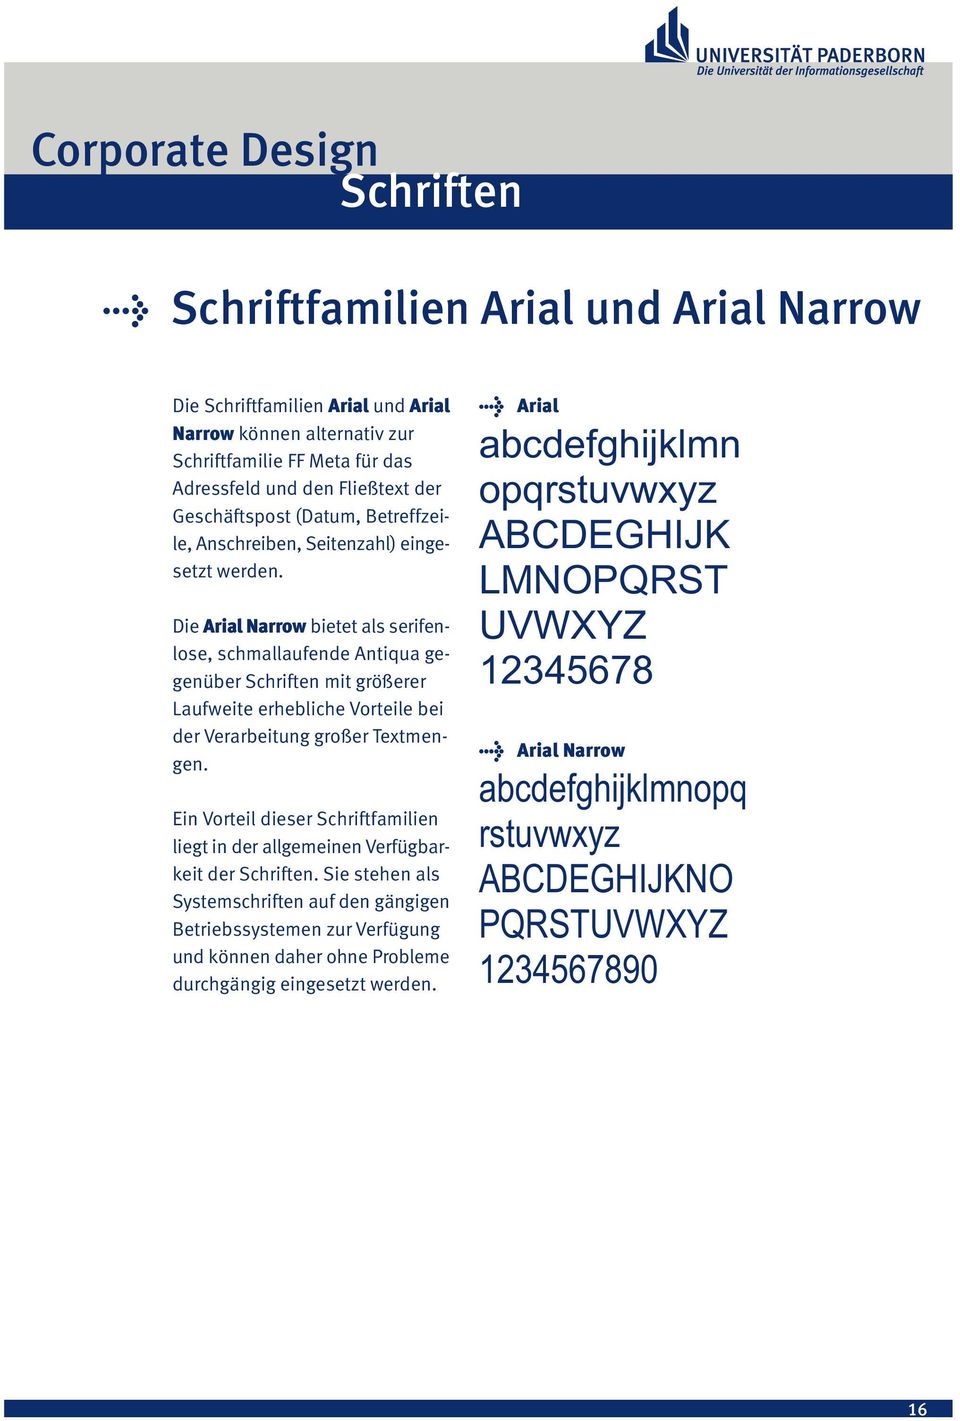 Die Arial Narrow bietet als serifenlose, schmallaufende Antiqua gegenüber Schriften mit größerer Laufweite erhebliche Vorteile bei der Verarbeitung großer Textmengen.